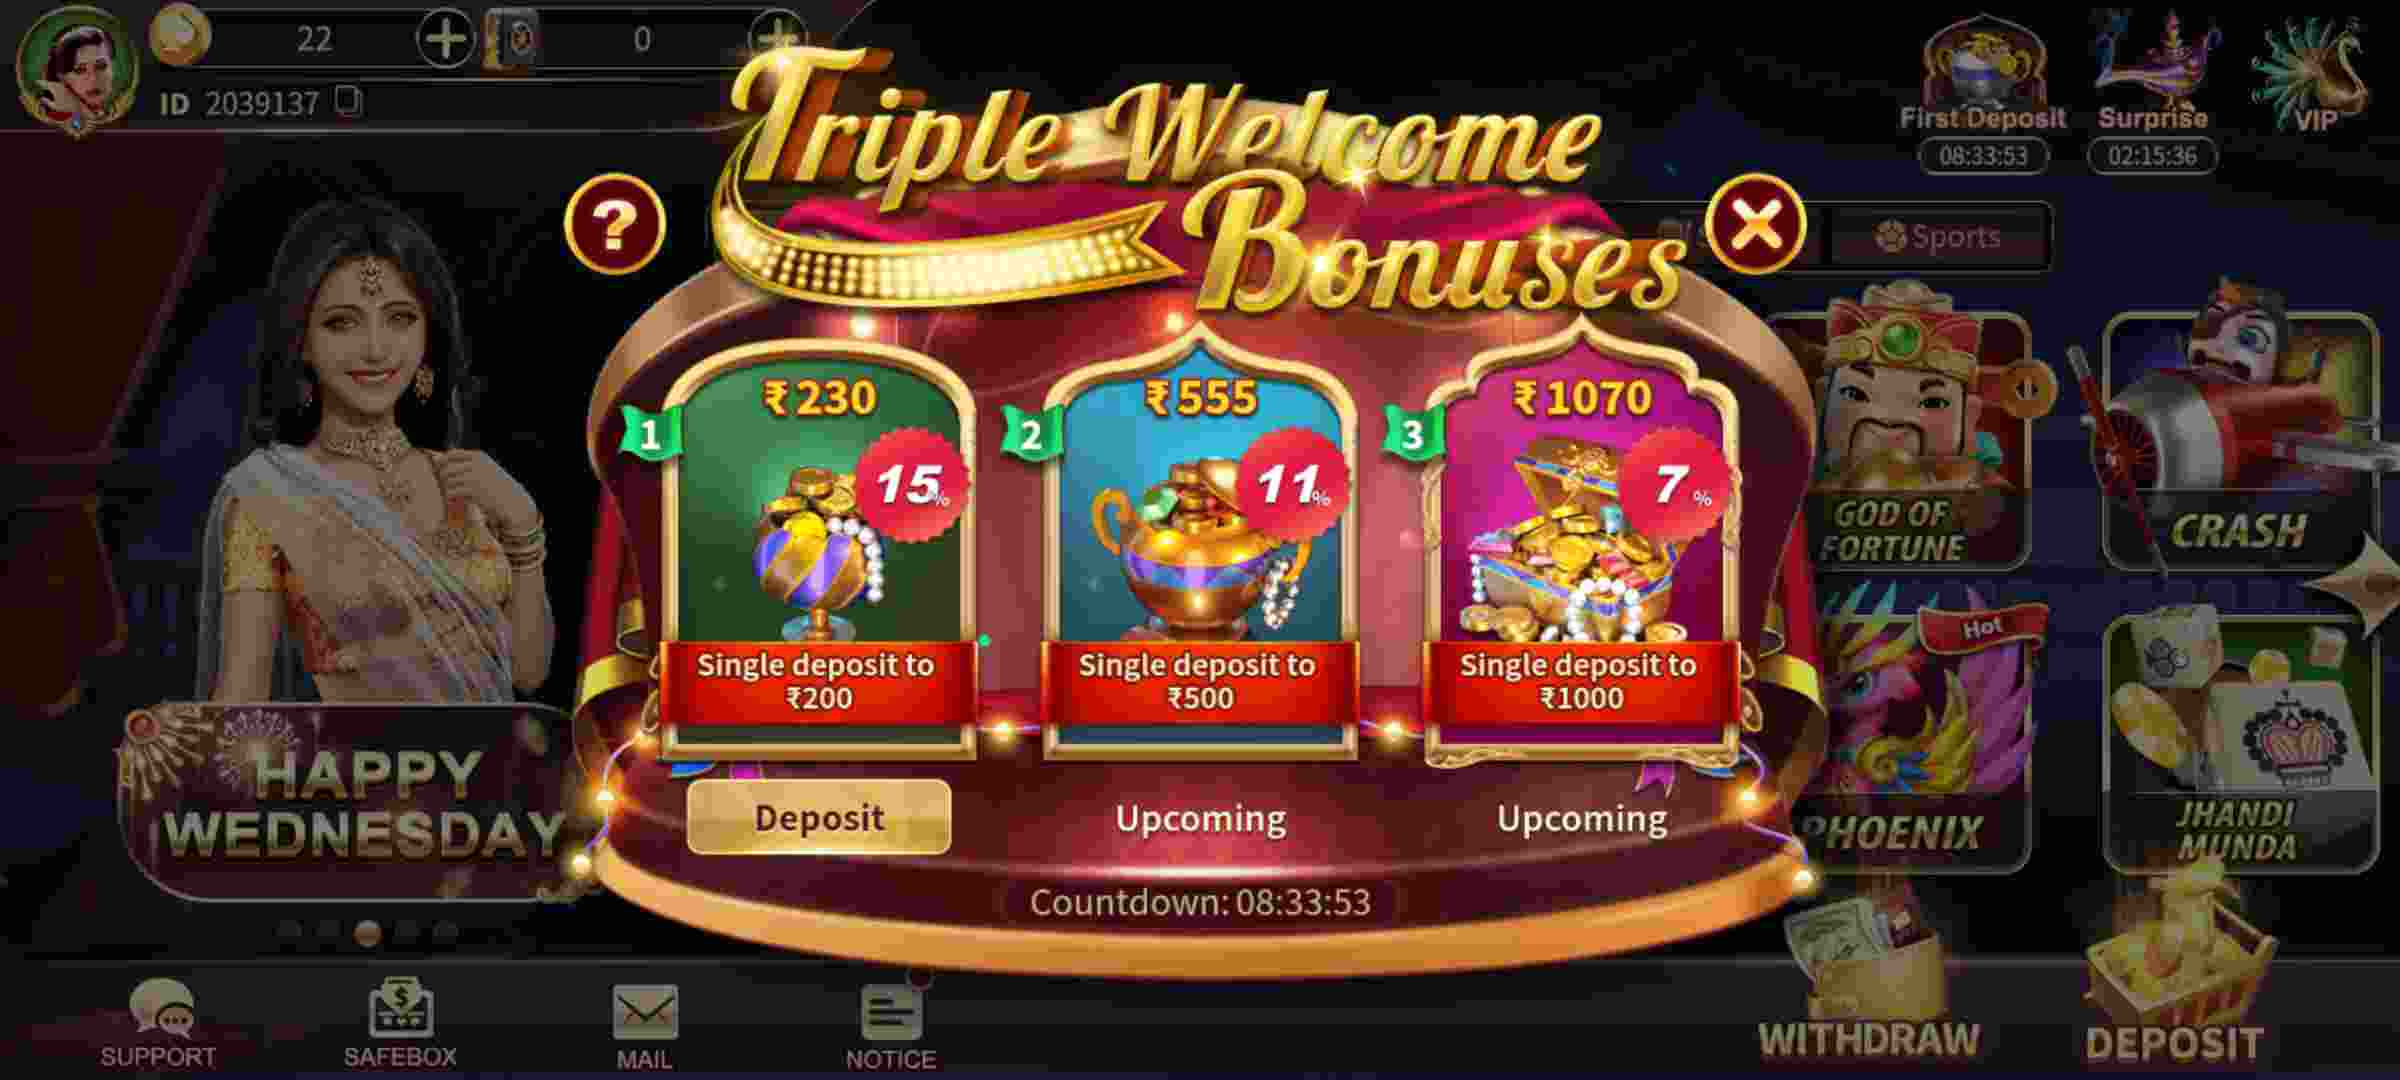 Win 789 Apk Download | Login Bonus 41 Rs